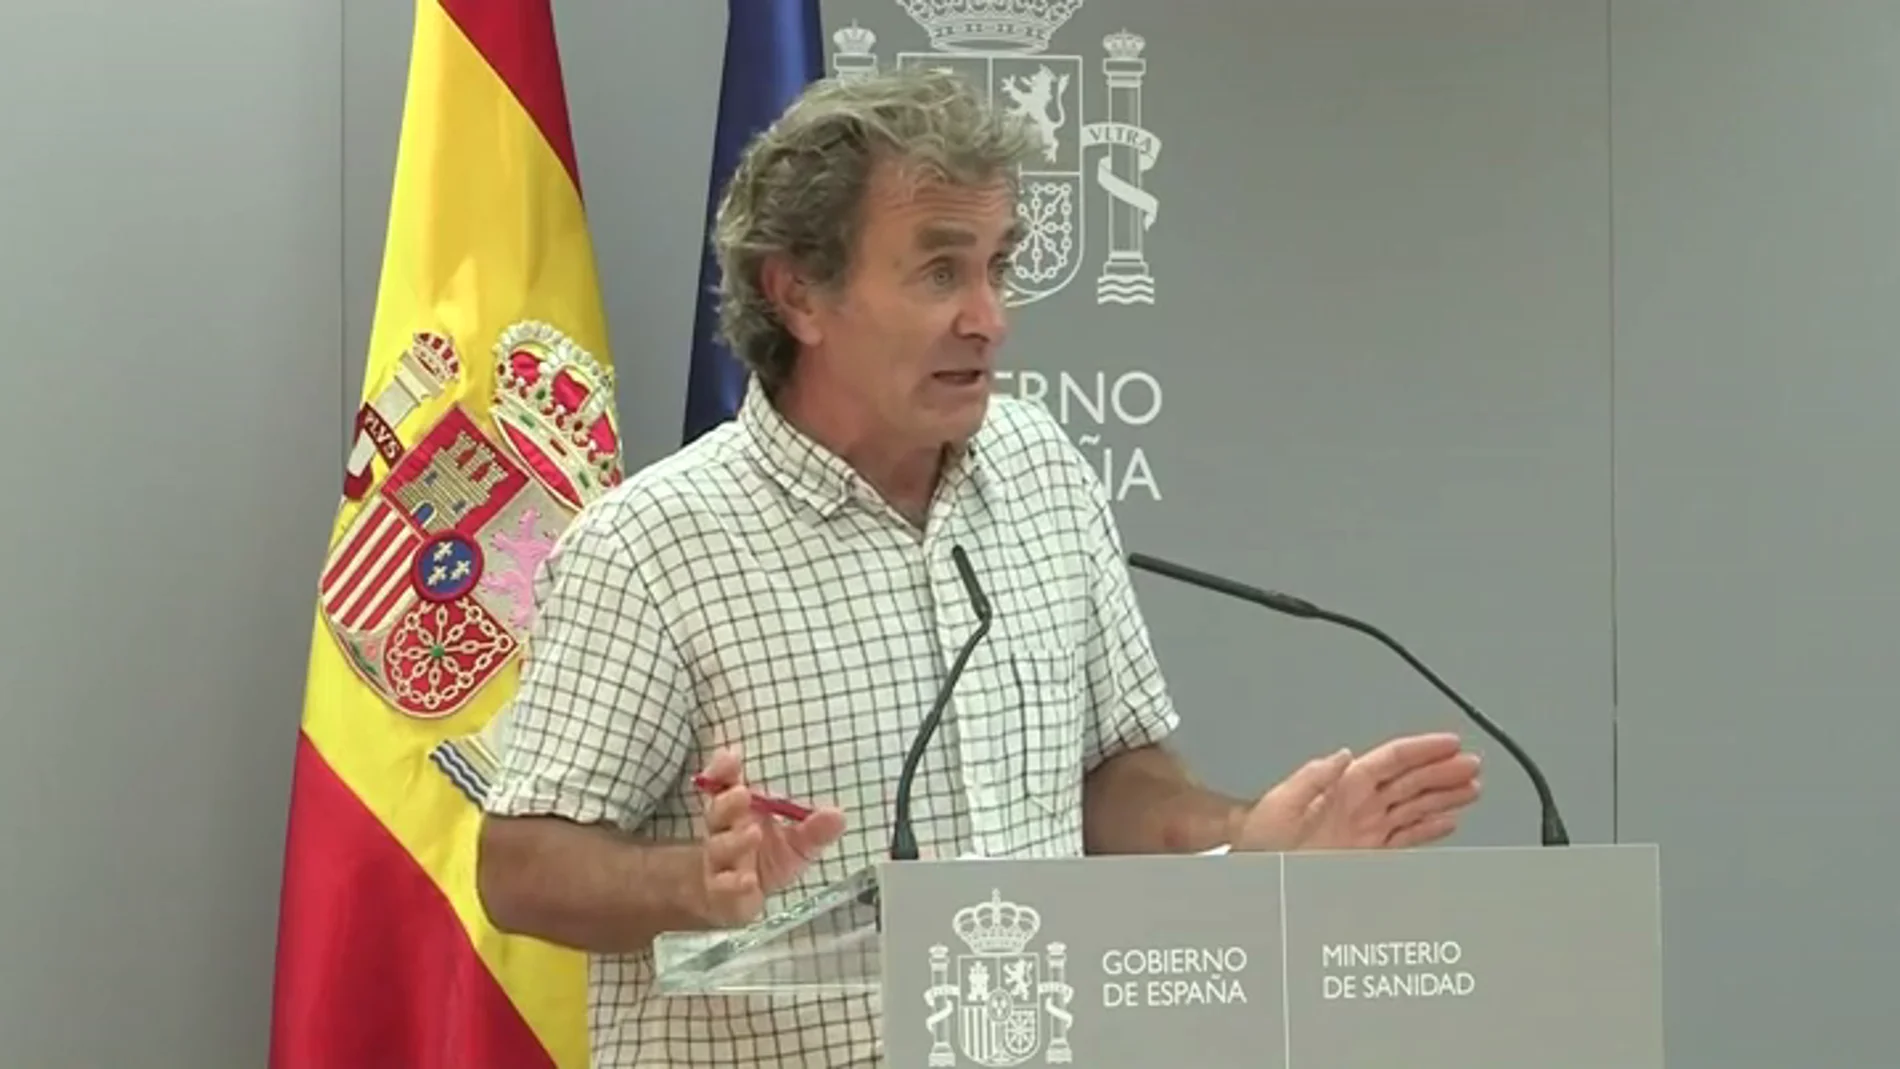 Fernando Simón, sobre otro confinamiento en España: "Son bulos que corren, no sé con qué intención"